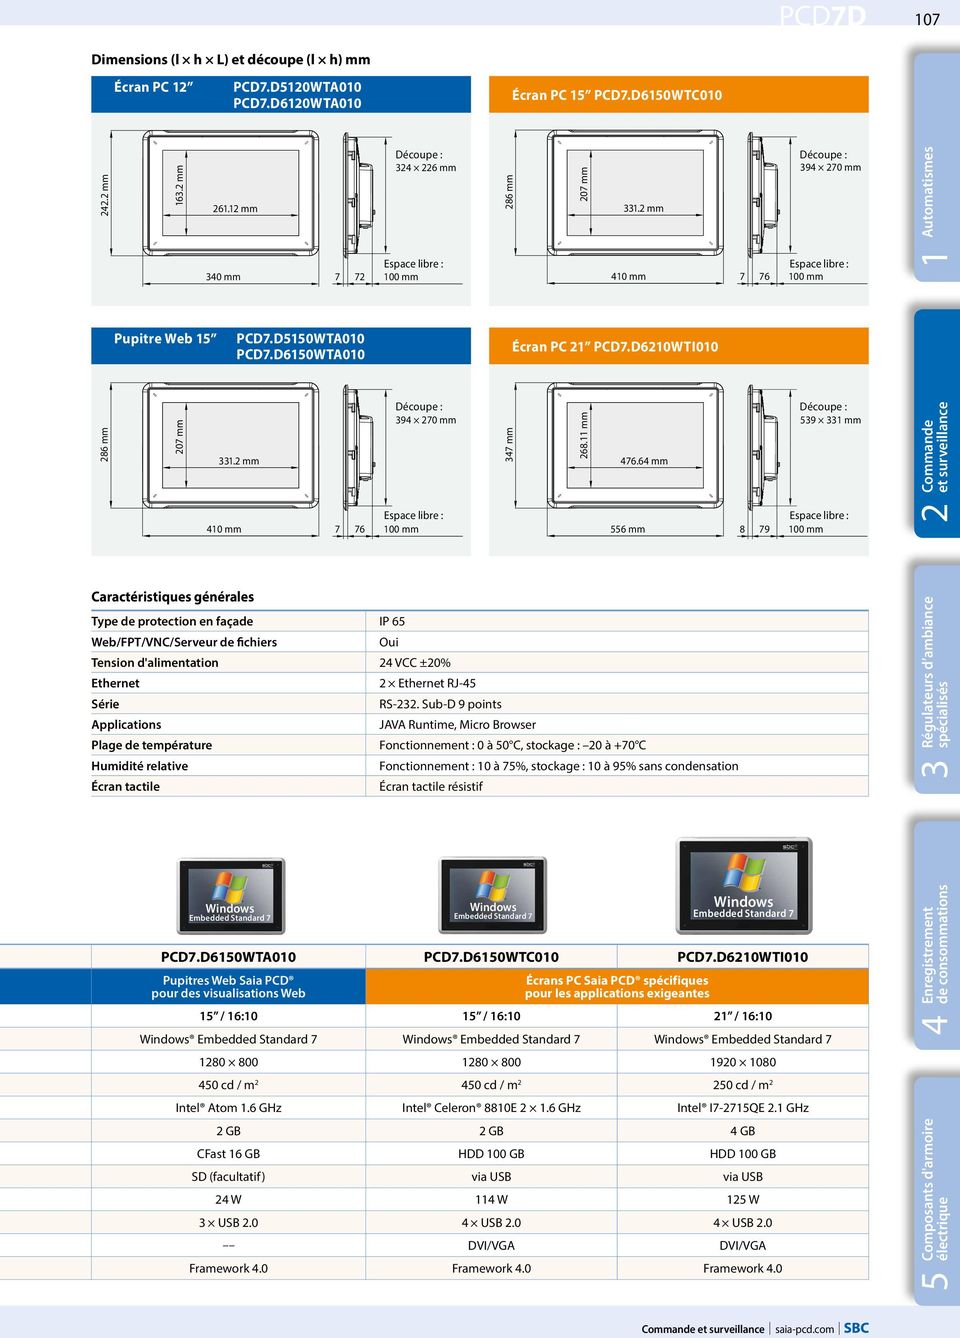 D6210WTI010 286 mm 207 mm 331.2 mm 410 mm Caractéristiques générales Type de protection en façade IP 65 Web/FPT/VNC/Serveur de fichiers Embedded Standard 7 Découpe : 394 270 mm 347 mm 268.11 mm 476.